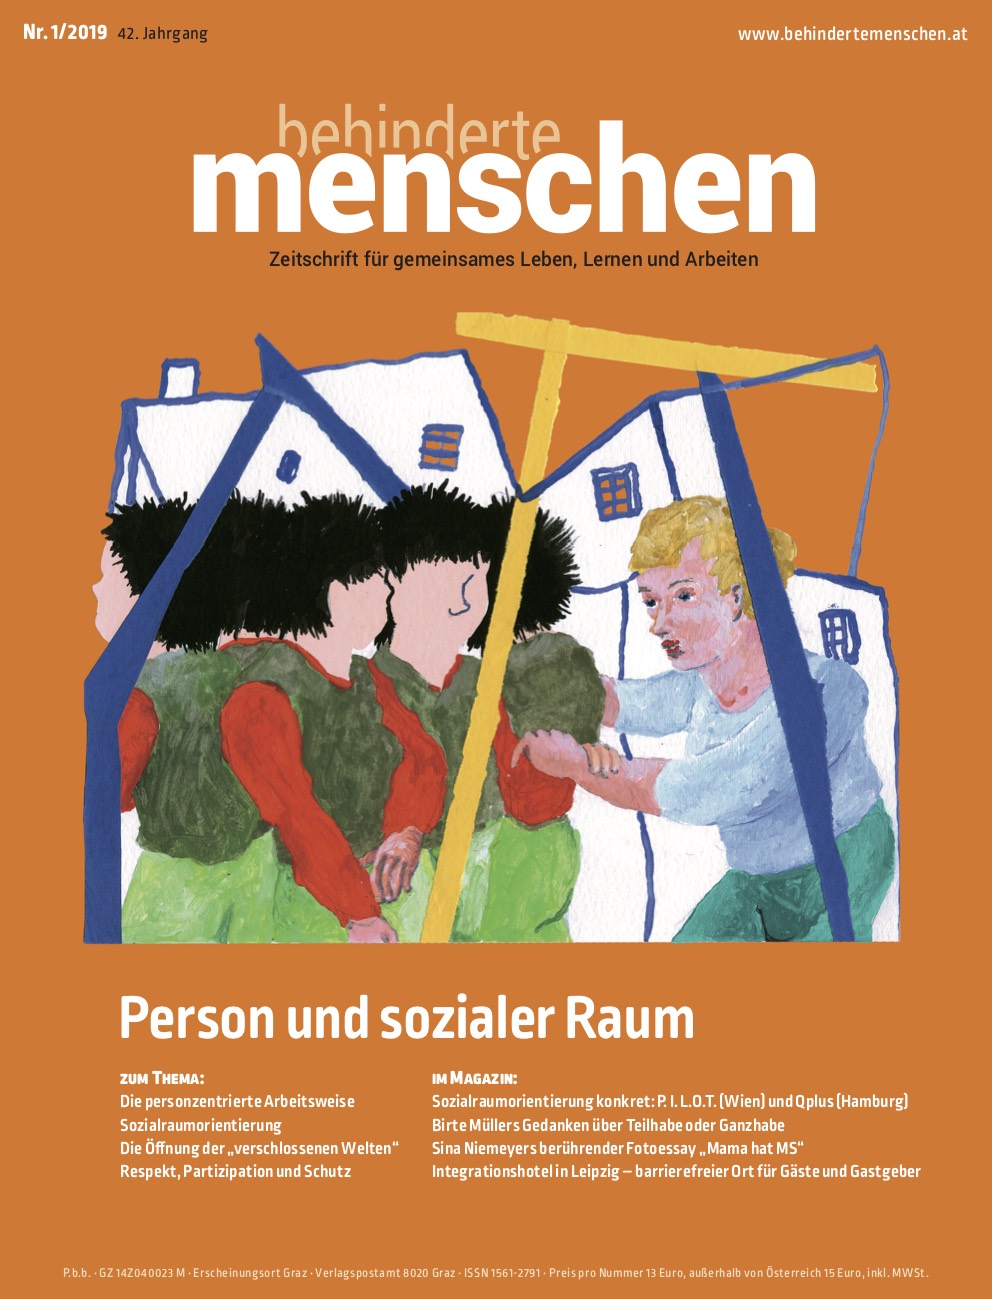 Titelbild der Zeitschrift BEHINDERTE MENSCHEN, Ausgabe 1/2019 "Person und sozialer Raum"